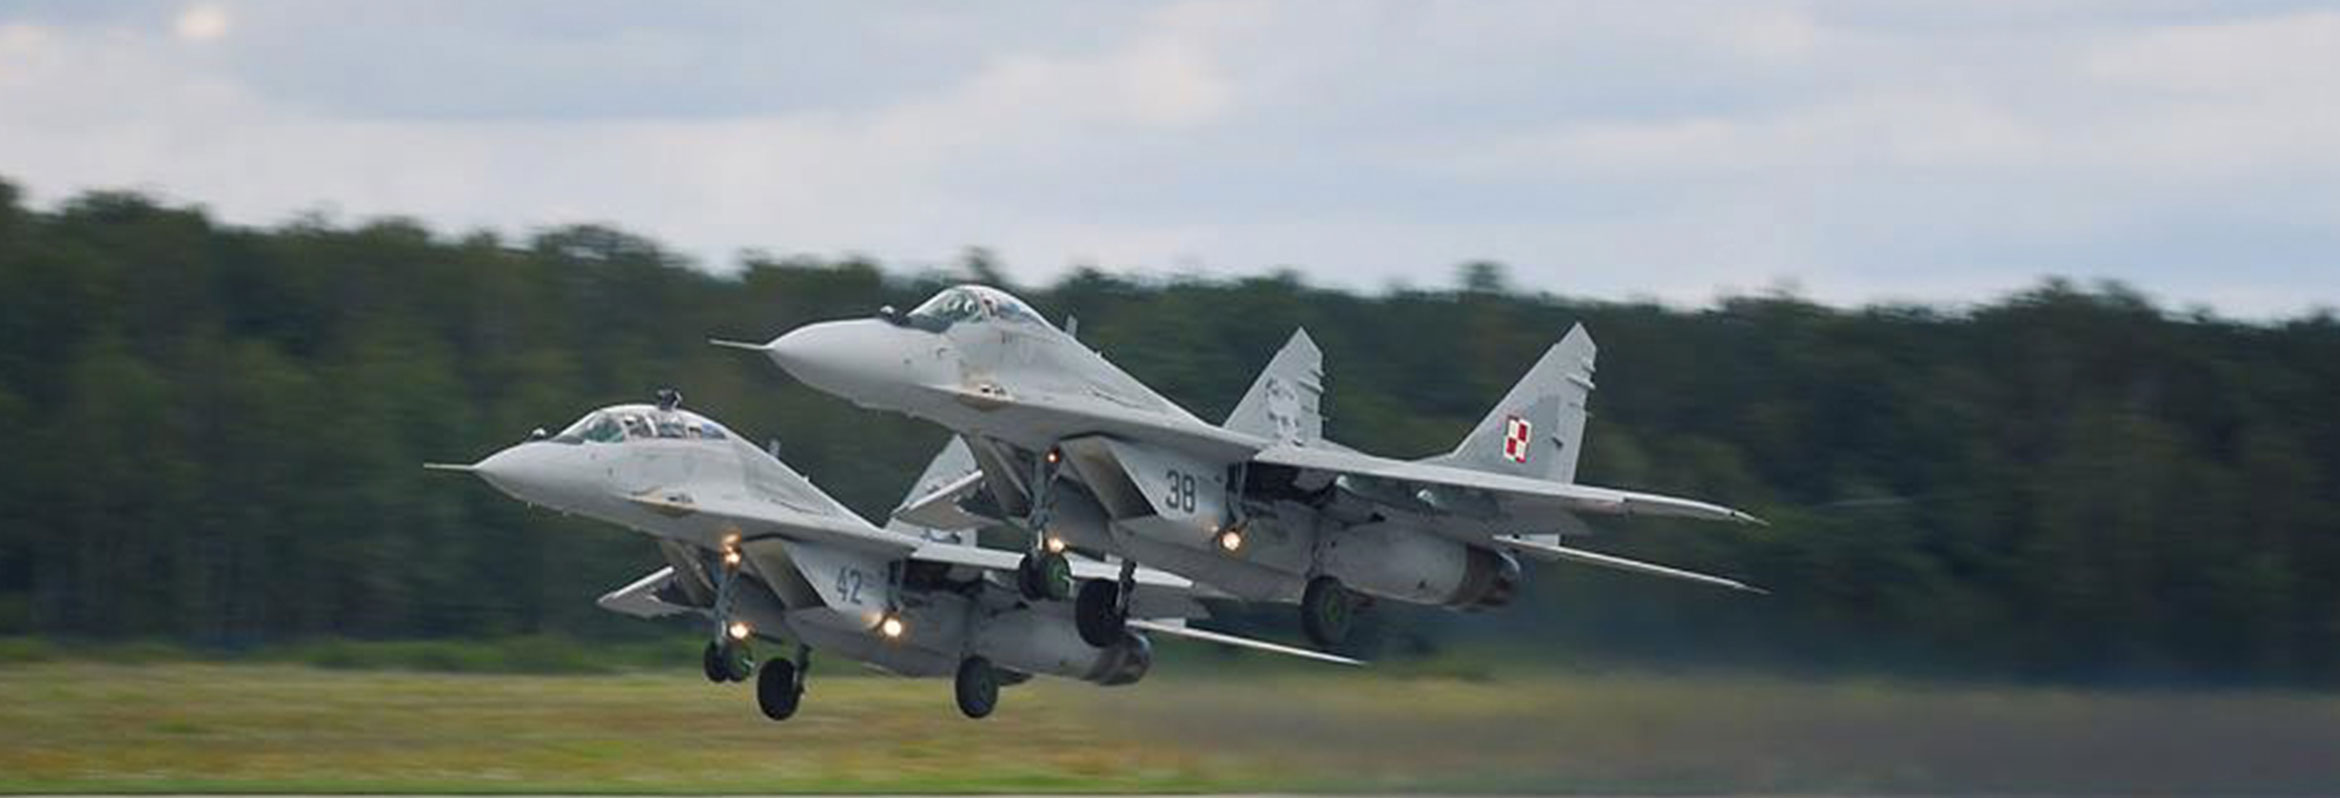 3 Baza Lotnictwa Taktycznego w Mińsku Mazowieckim